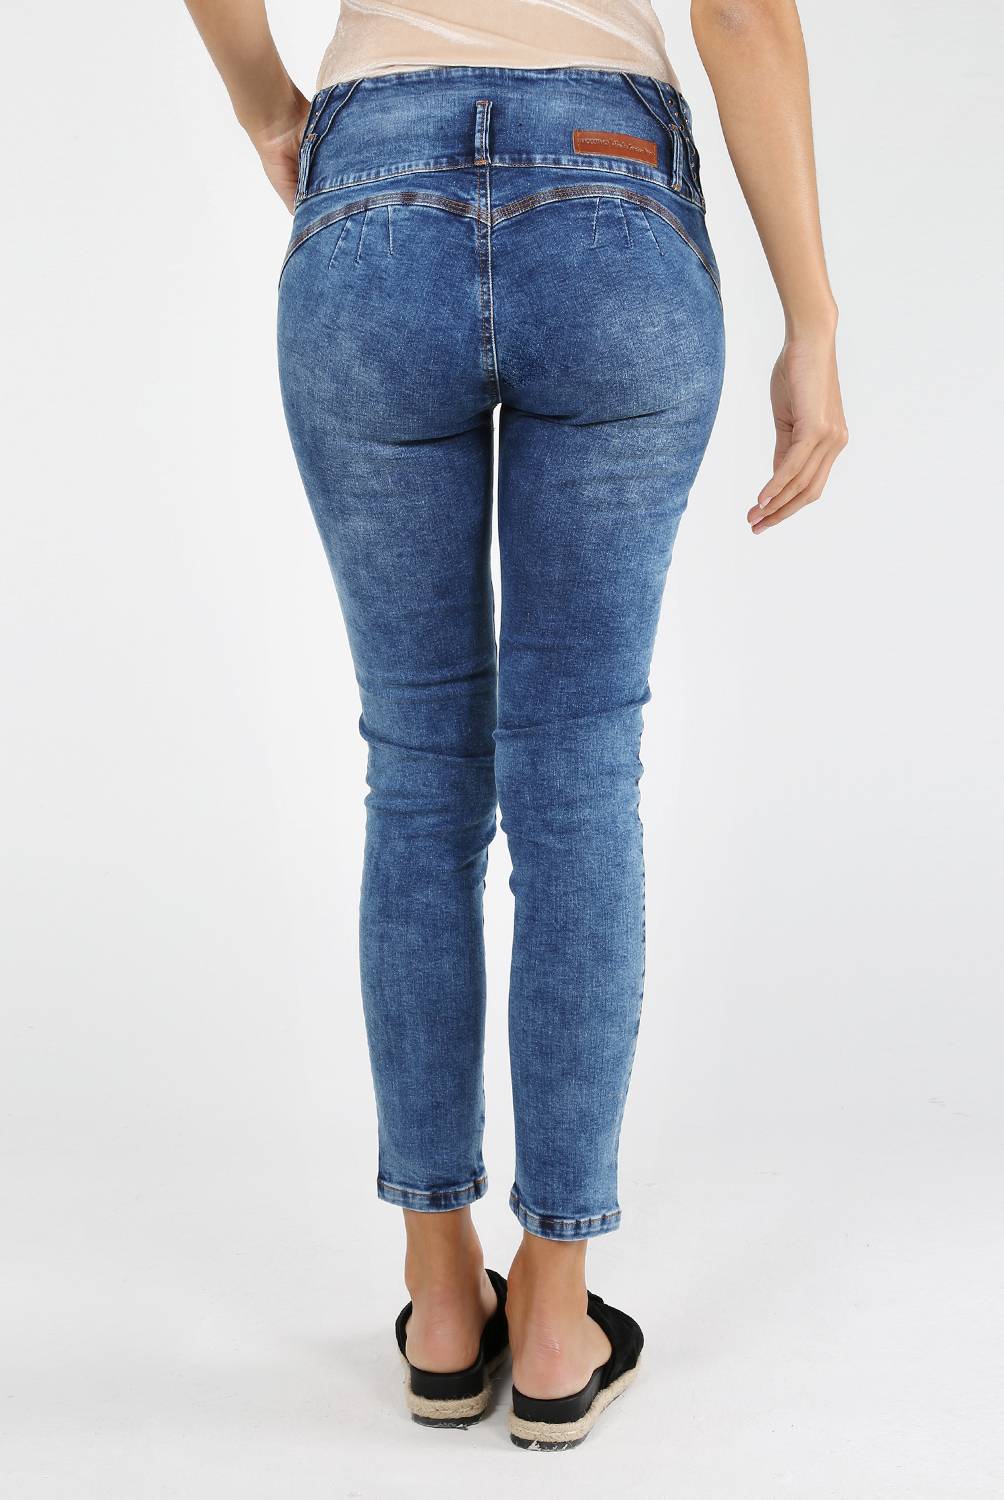 MOSSIMO - Jeans Pretina